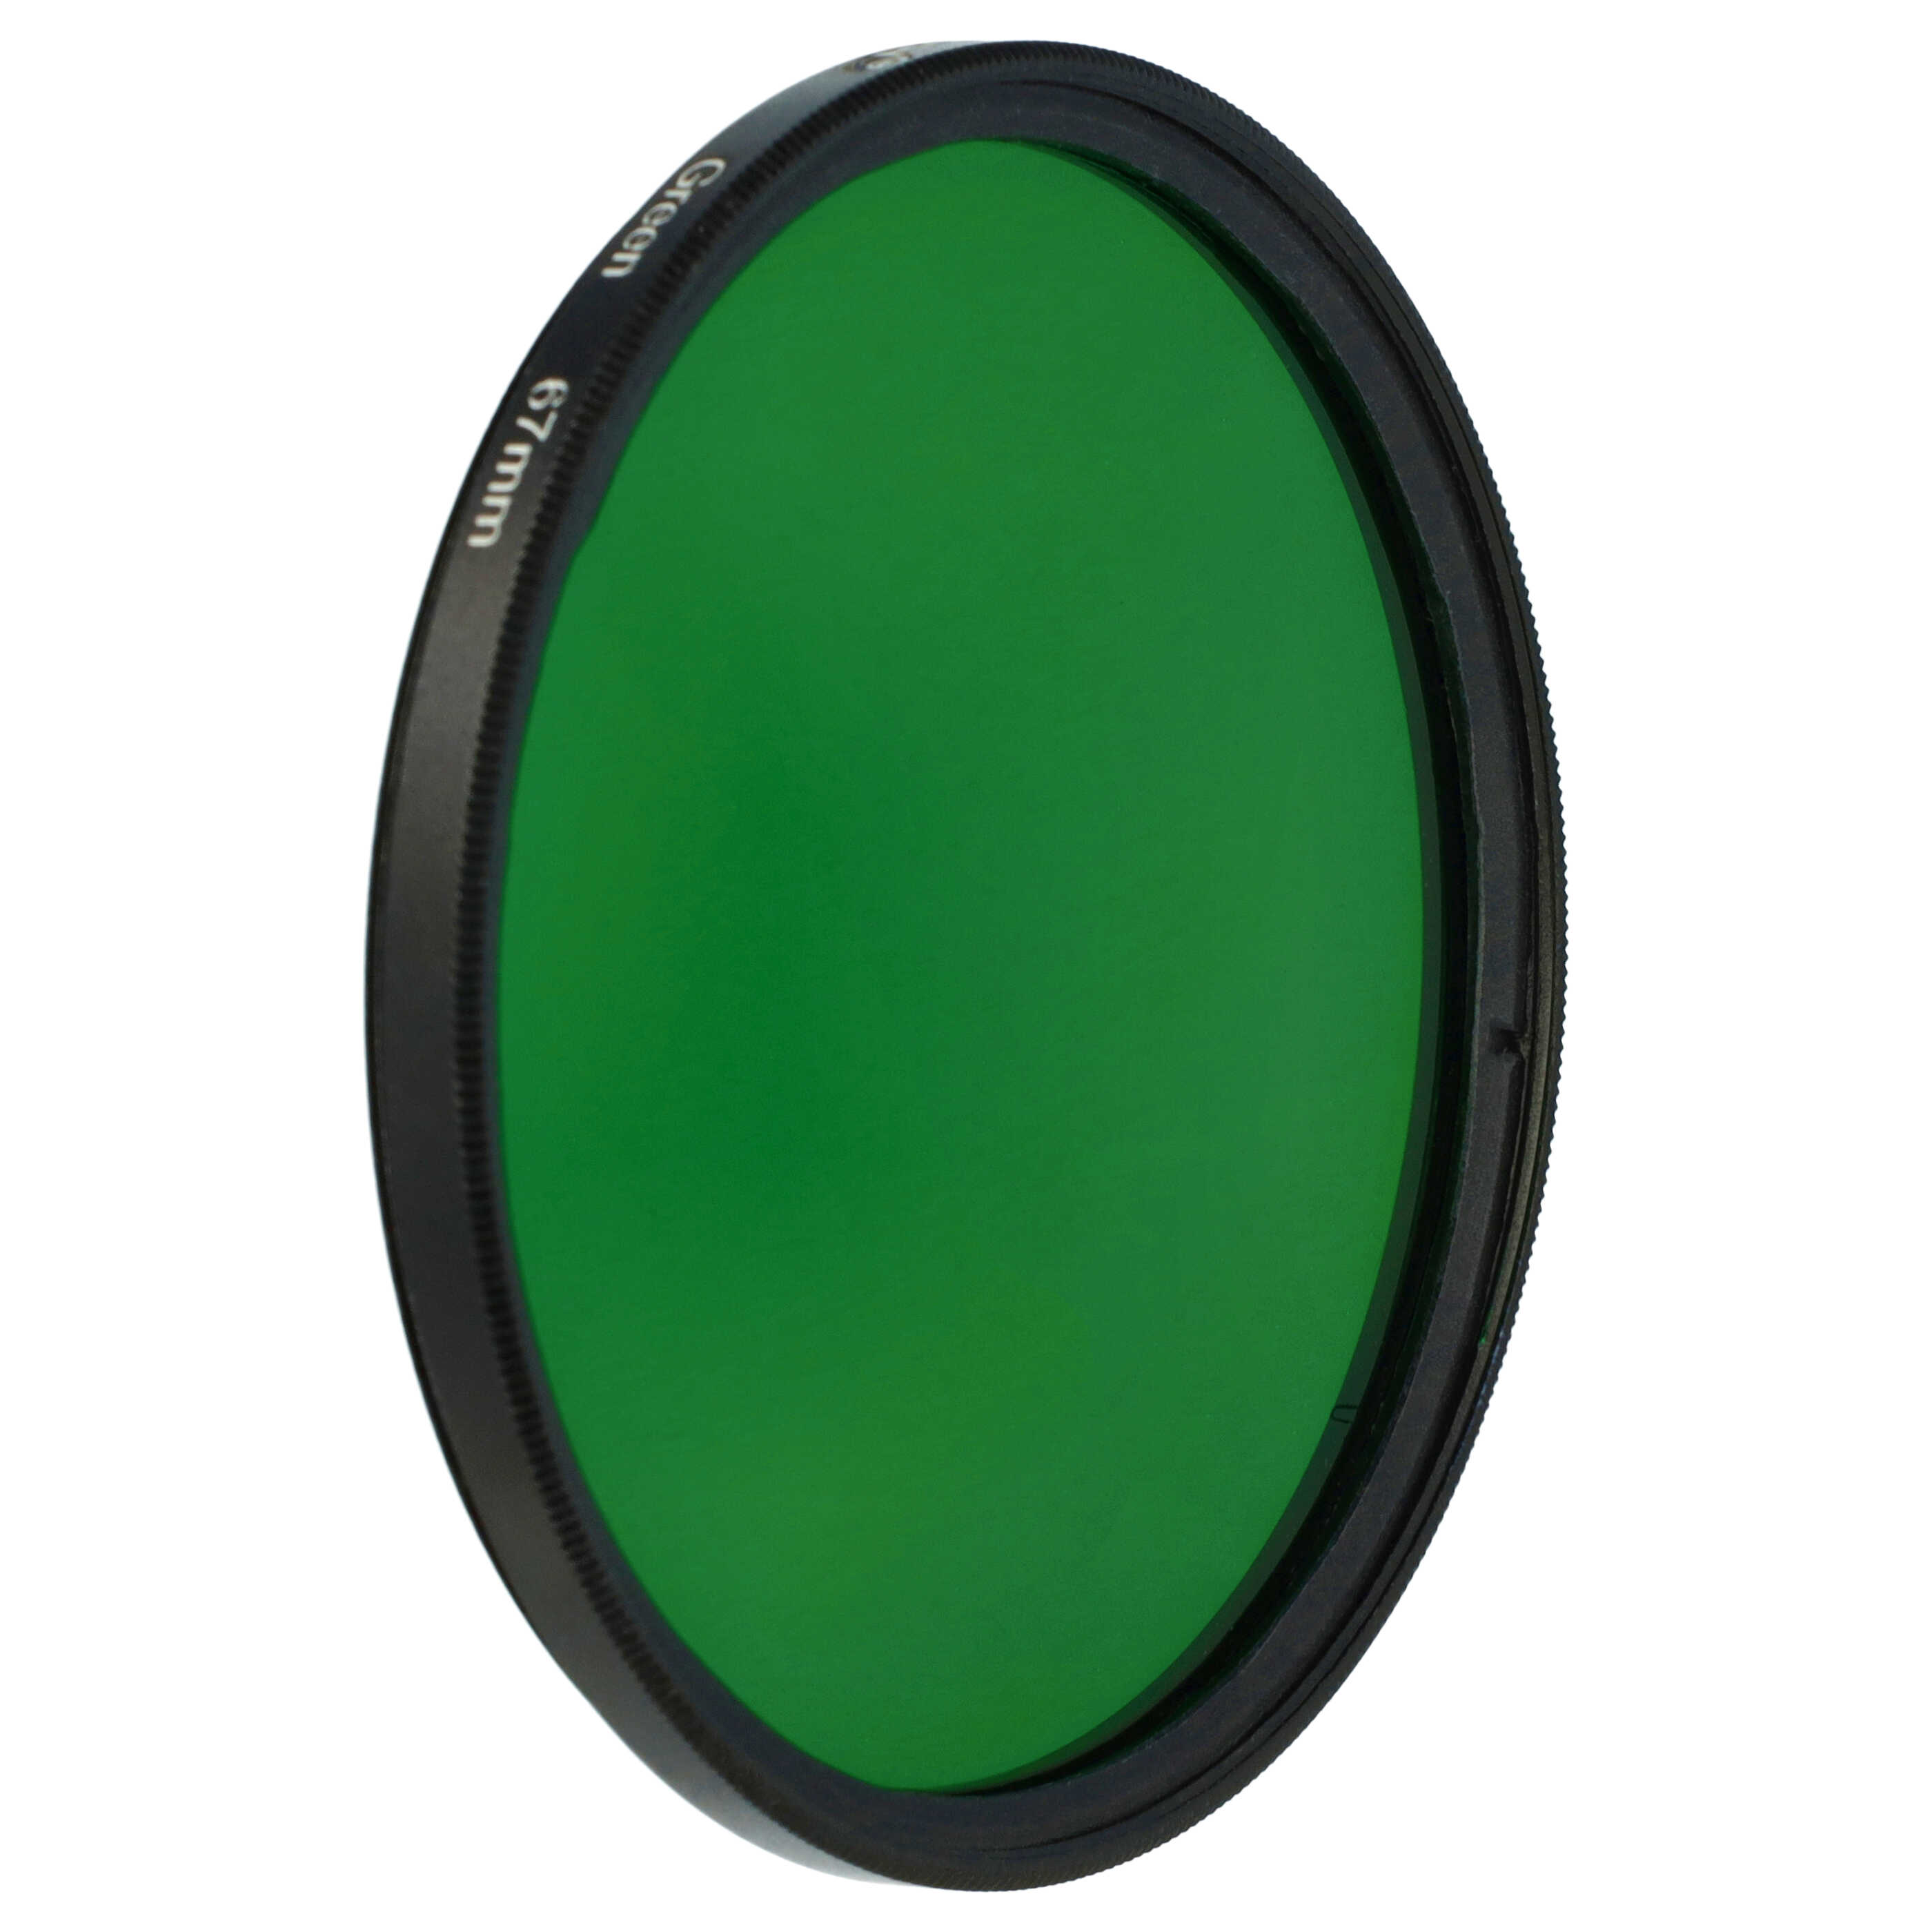 Filtro de color para objetivo de cámara con rosca de filtro de 67 mm - Filtro verde